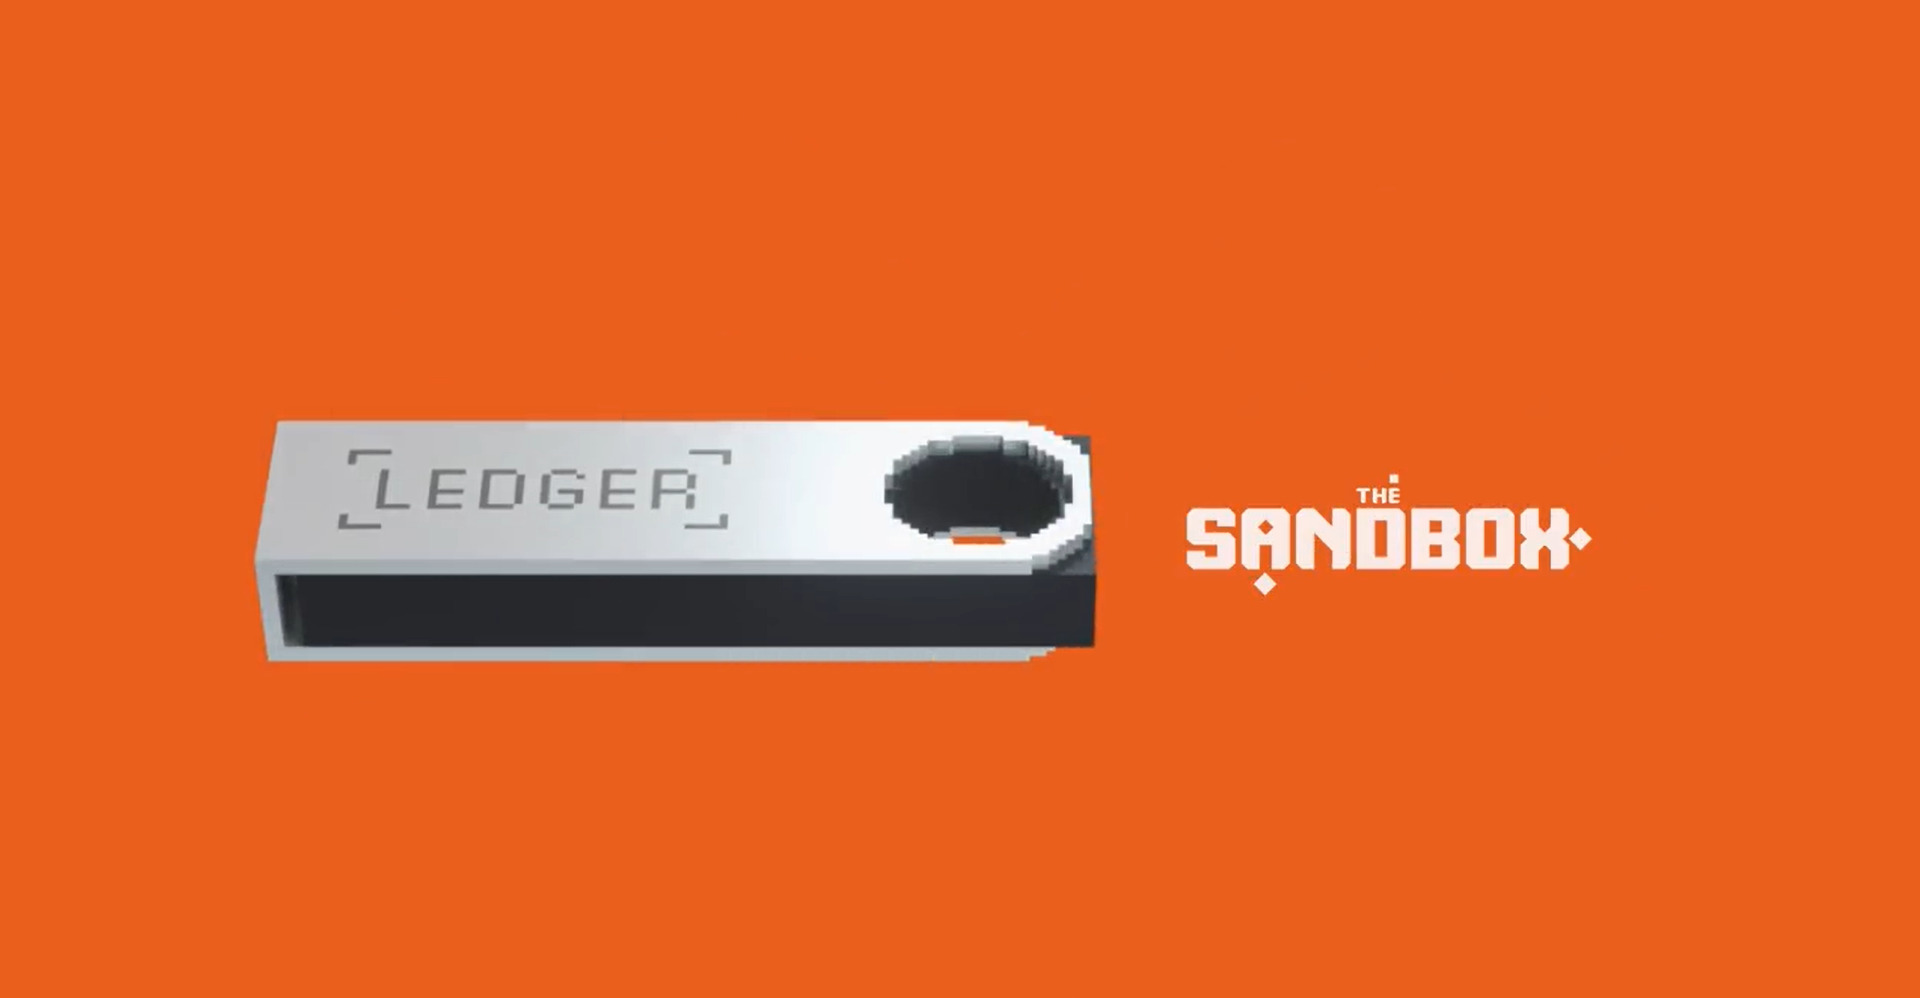 Ledger hợp tác với The Sandbox để thúc đẩy hoạt động giáo dục tiền mã hóa trong metaverse